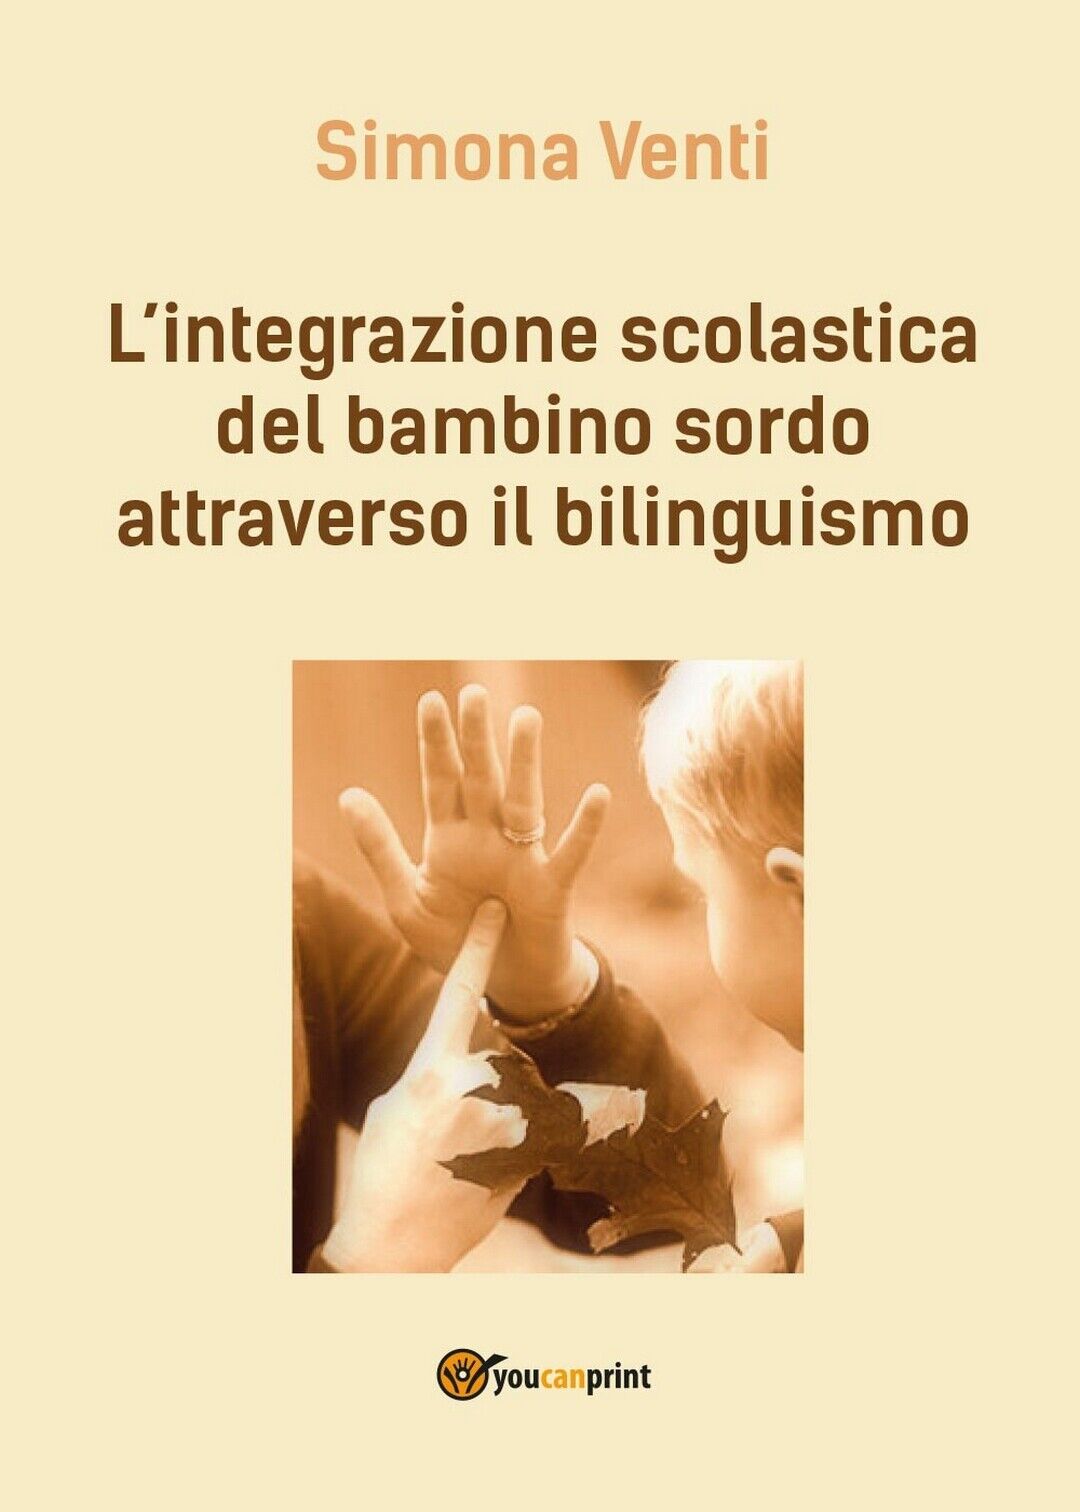 L'integrazione scolastica del bambino sordo attraverso il bilinguismo (S. Venti)